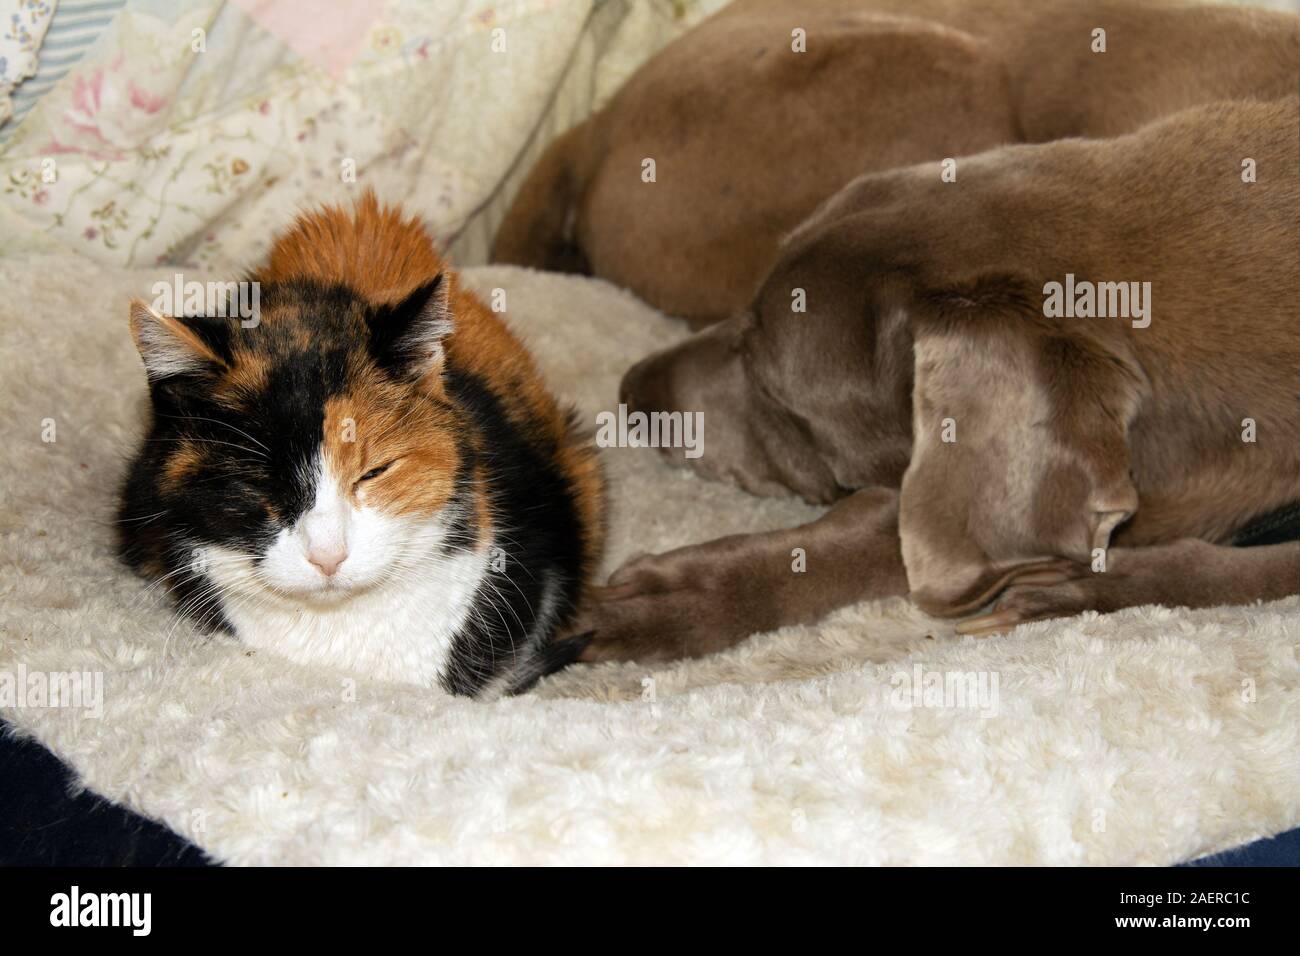 Vieux chat calico et un vieux chien chien braque de partager un lit, dormir côte à côte Banque D'Images